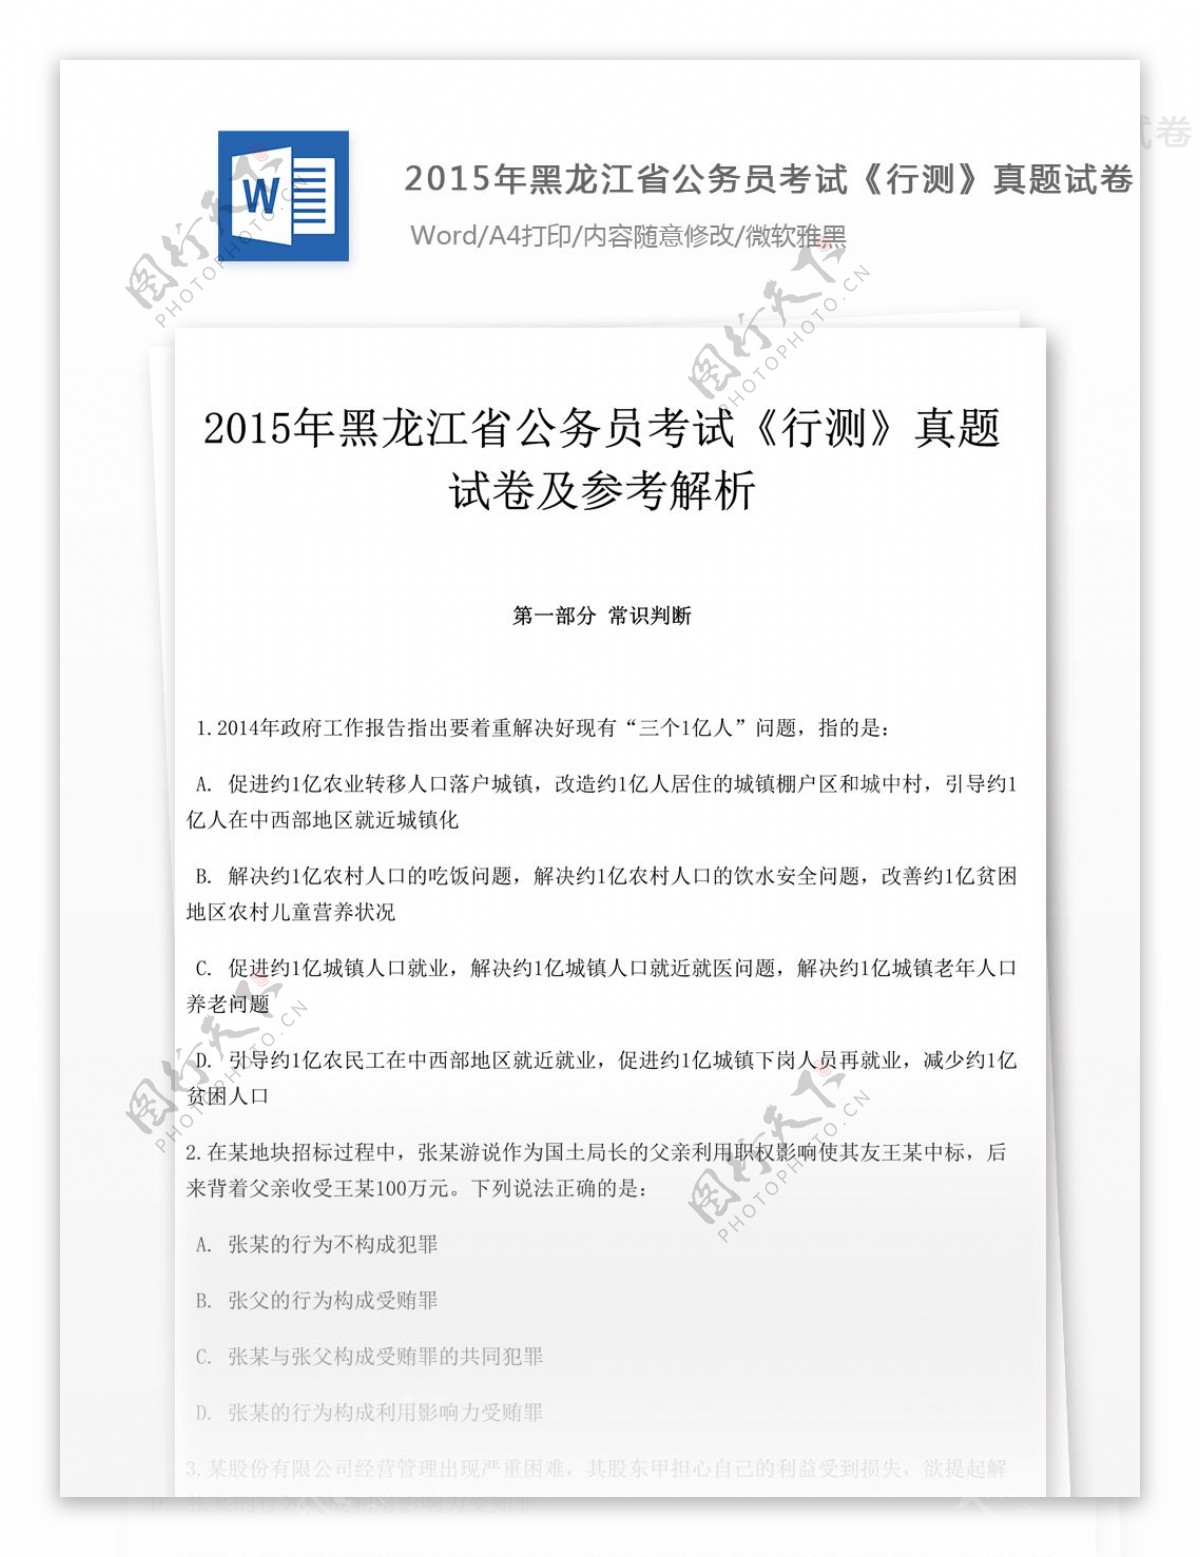 2015年黑龙江省公务员考试行测文库题库